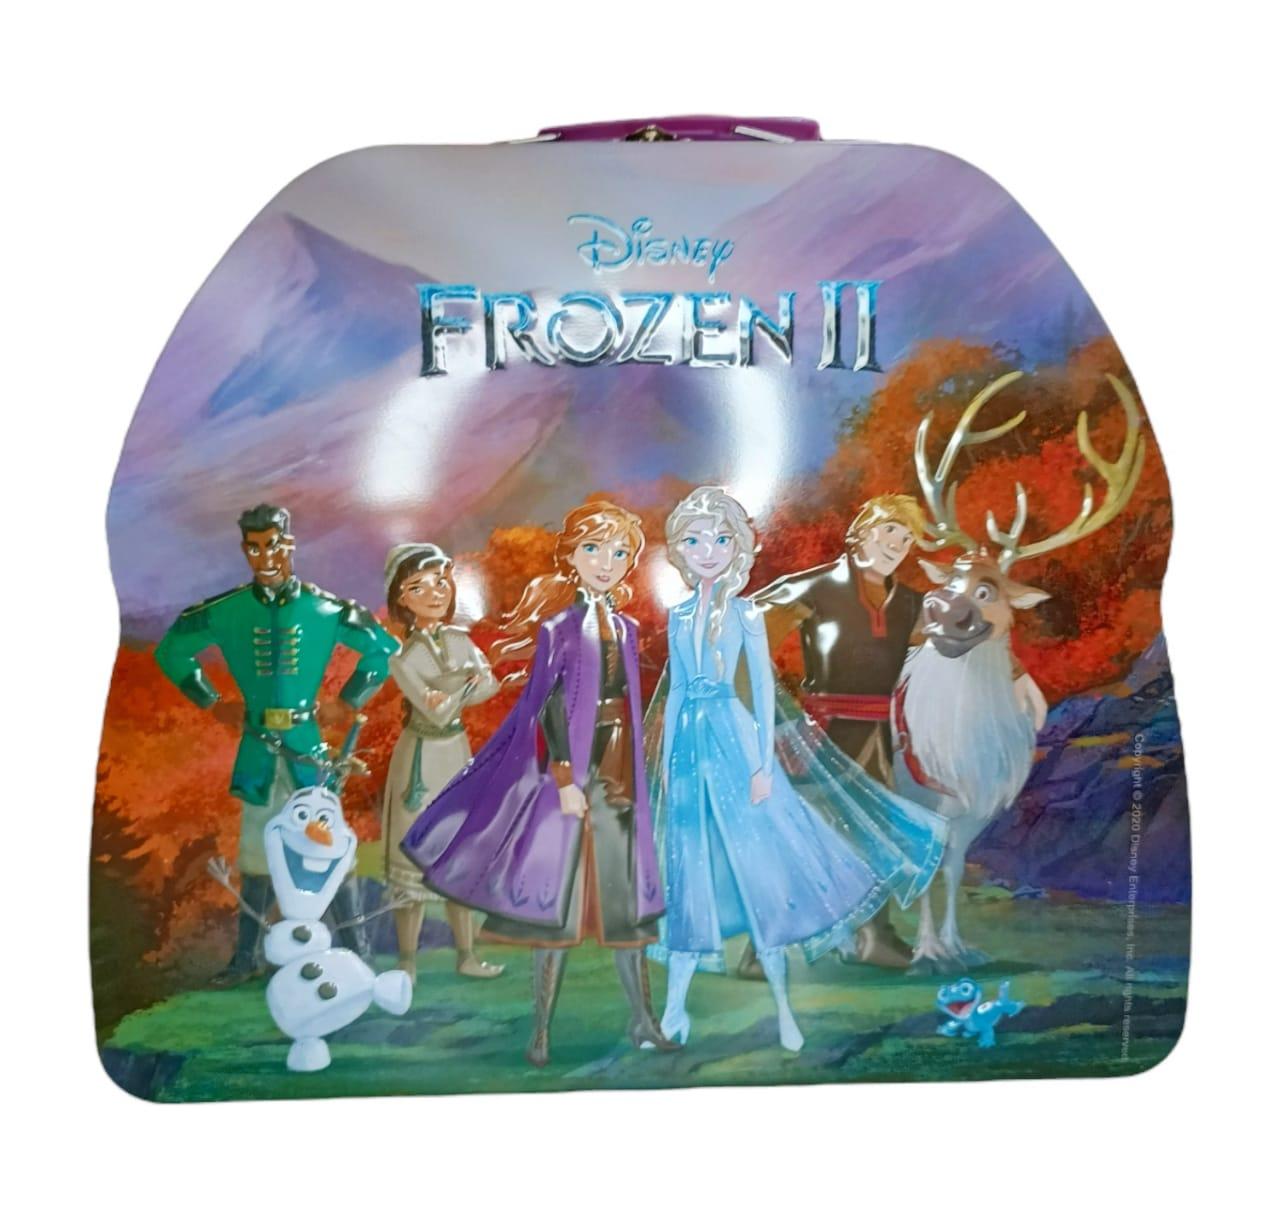 Valija de Frozen con personajes de coleccion